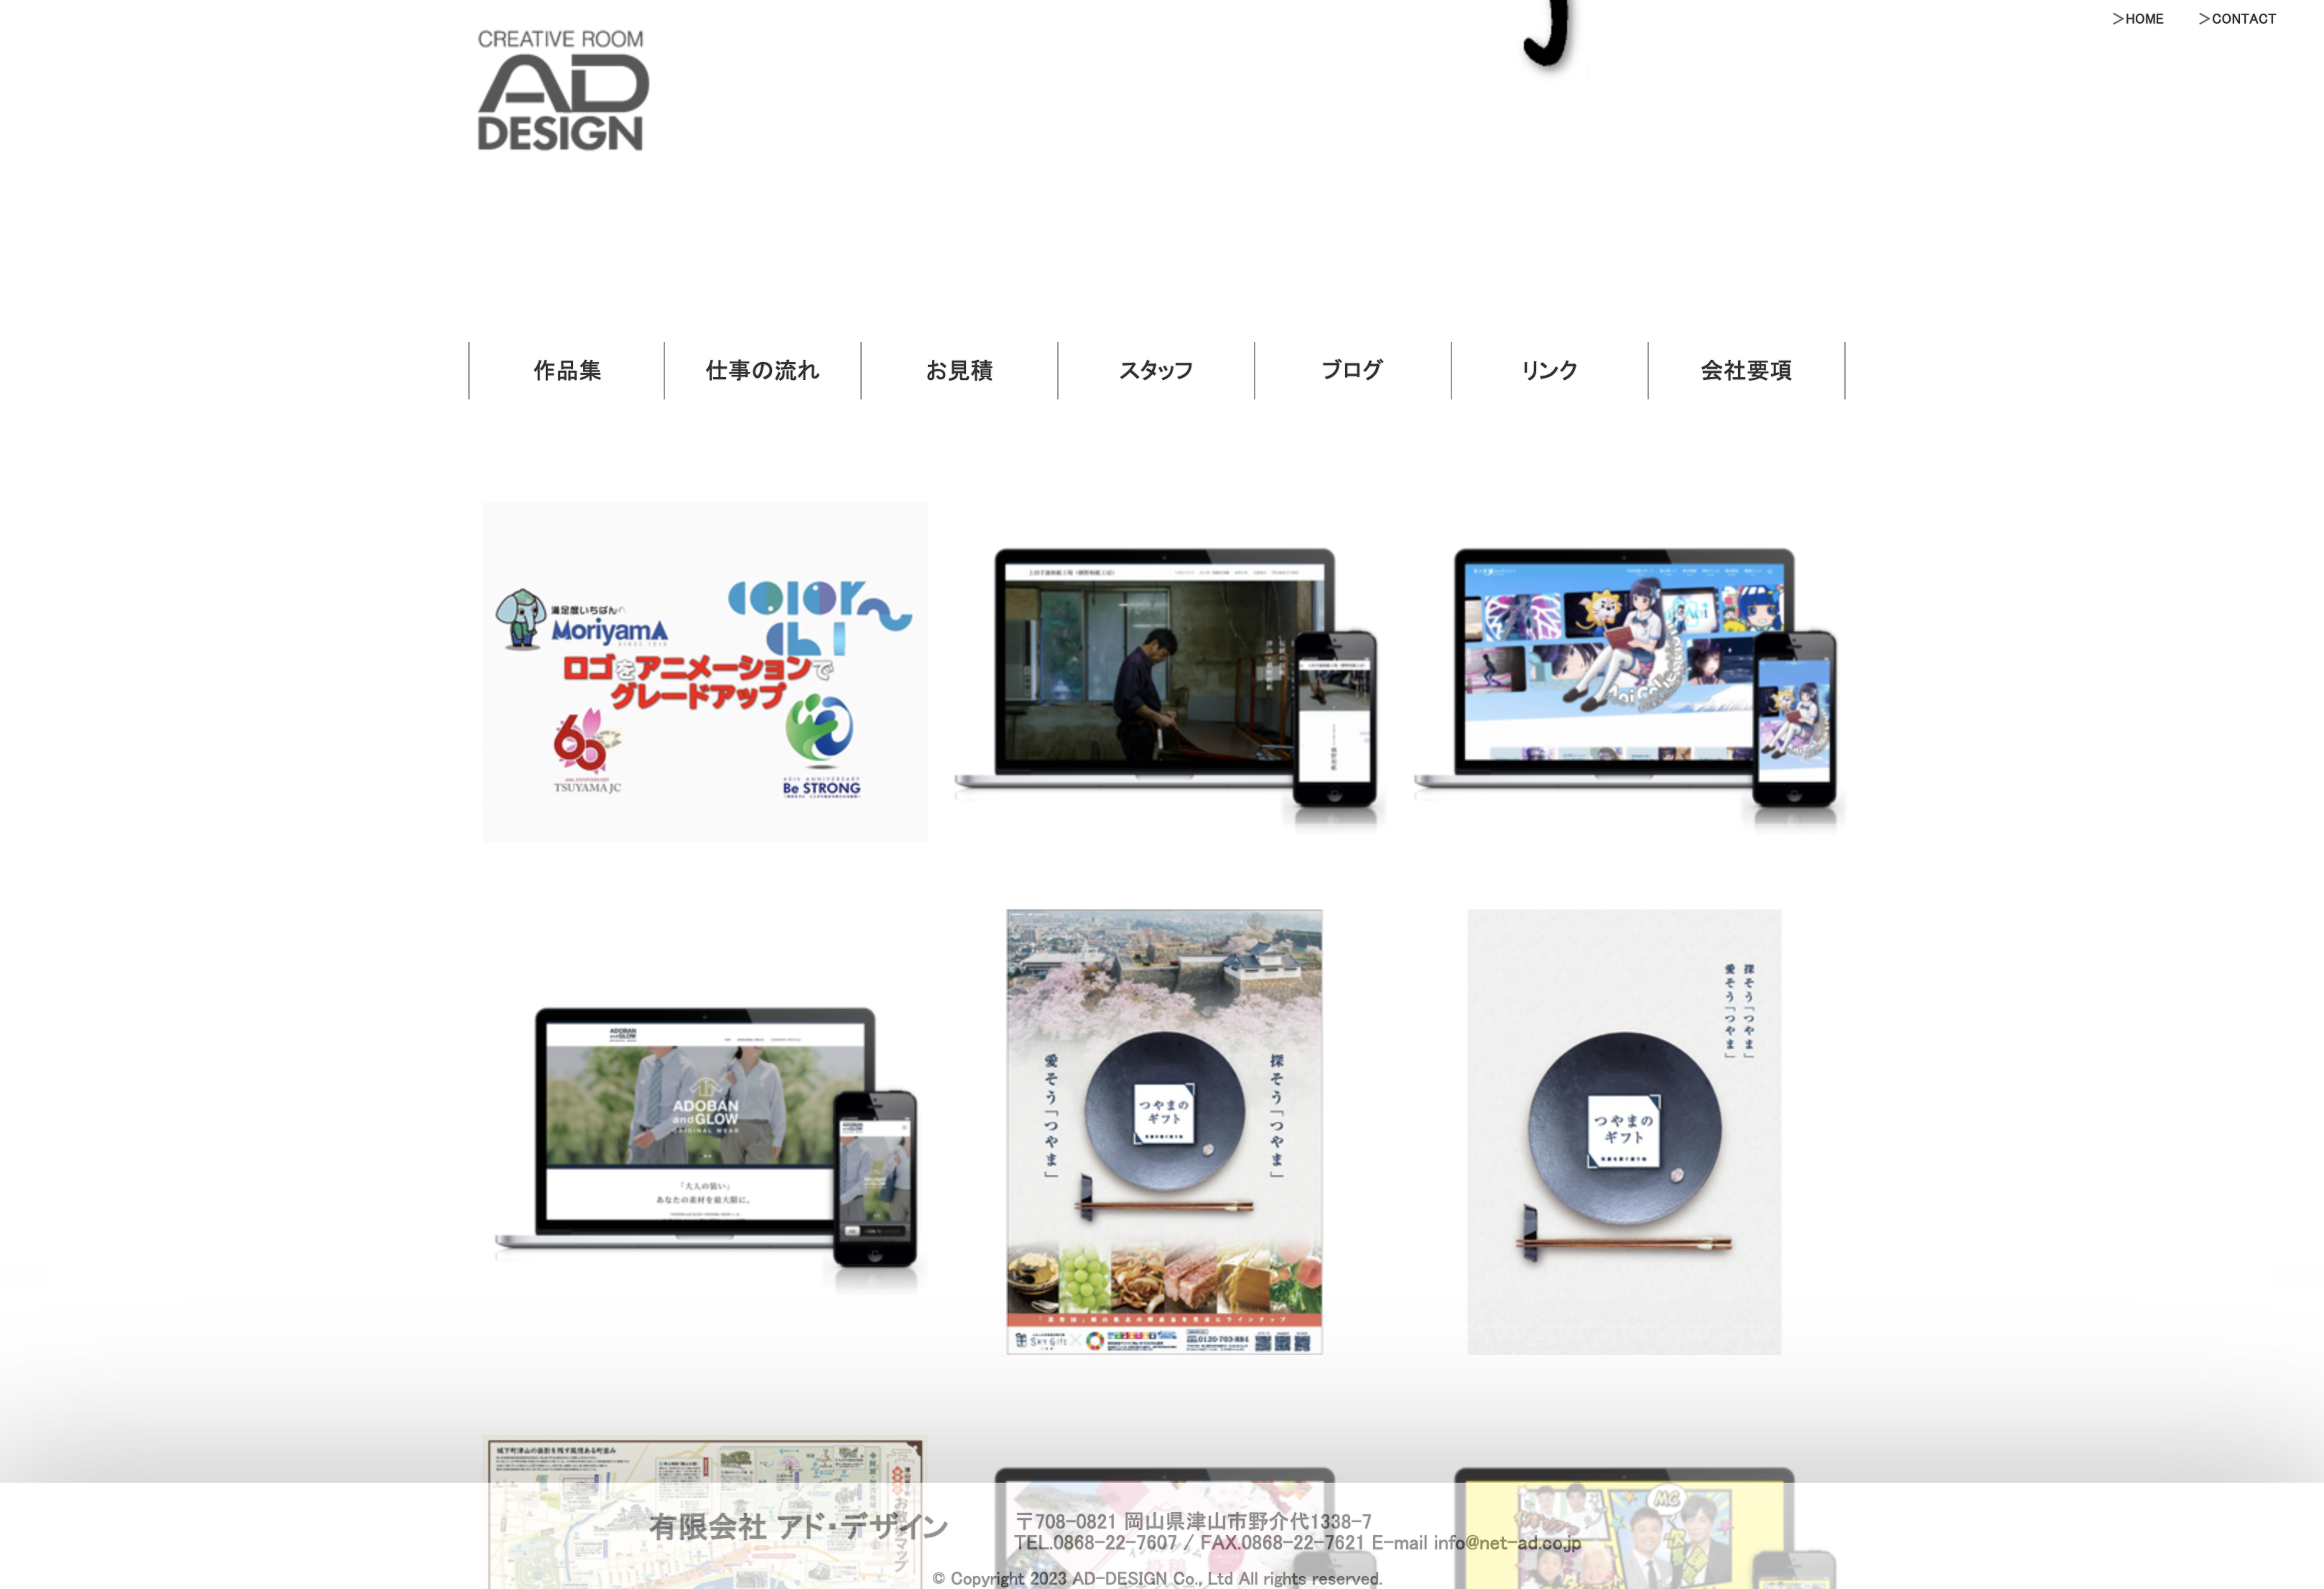 有限会社アドデザインの有限会社アド・デザイン:Web広告サービス